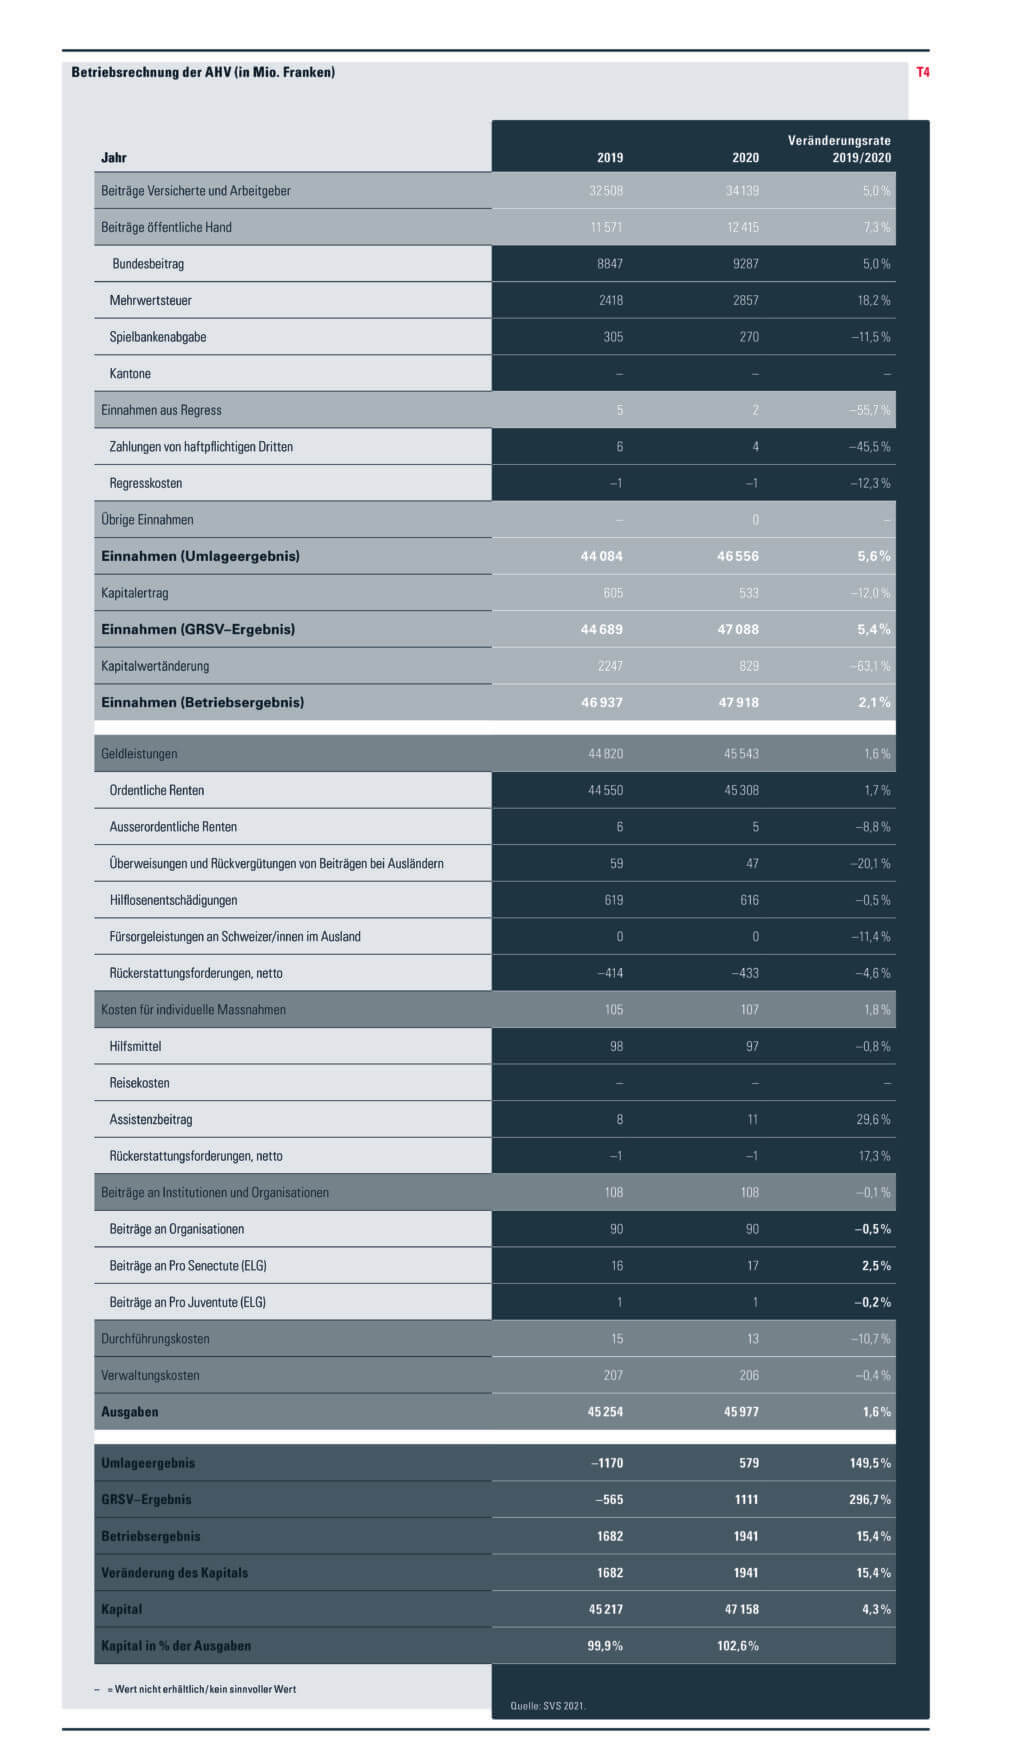 Tabelle mit der detaillierten Betriebsrechnung der AHV in den Jahren 2019 und 2020 sowie der Veränderungsrate